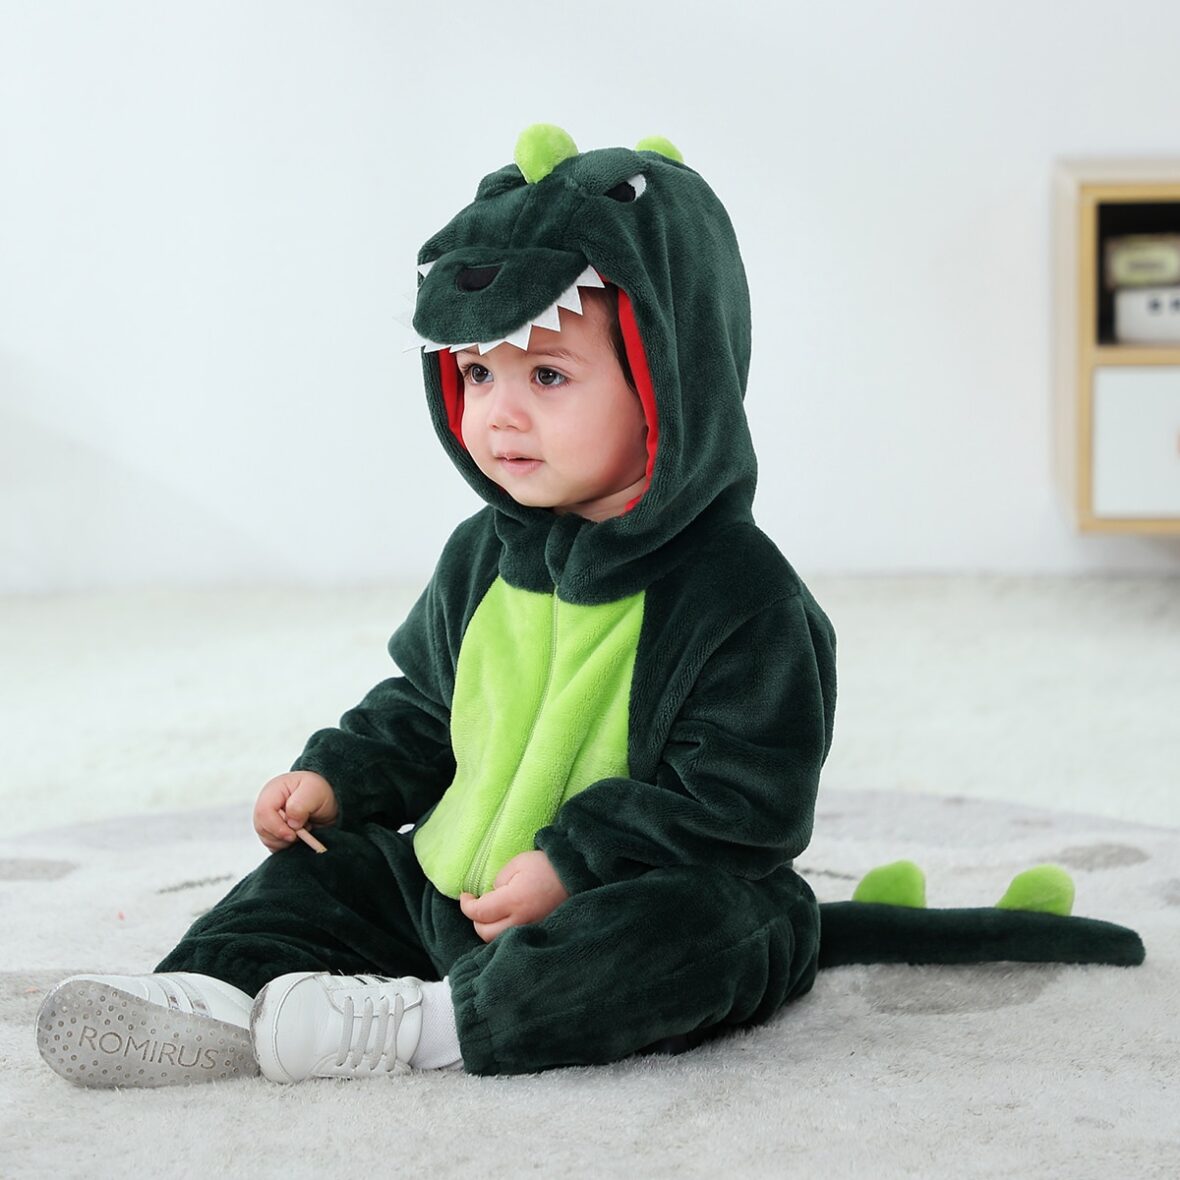 Crocodile Polar Fleece Kigurumi Onesie Pajama Costume For Infant/Toddler